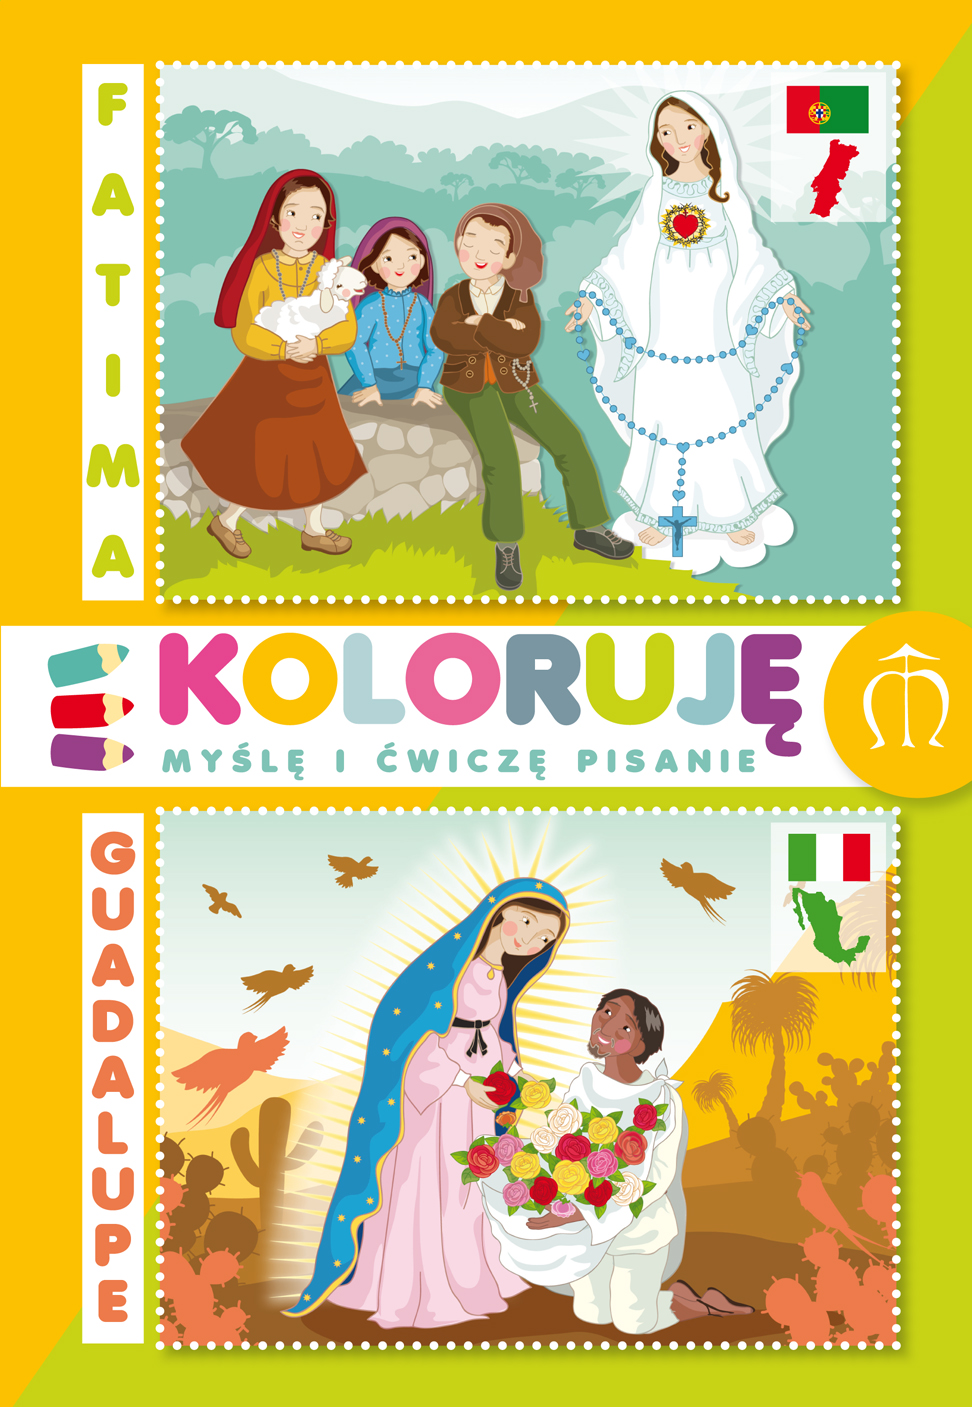 Kolorowanki  Fatima - Guadalupe. Koloruję, myślę i ćwiczę pisanie